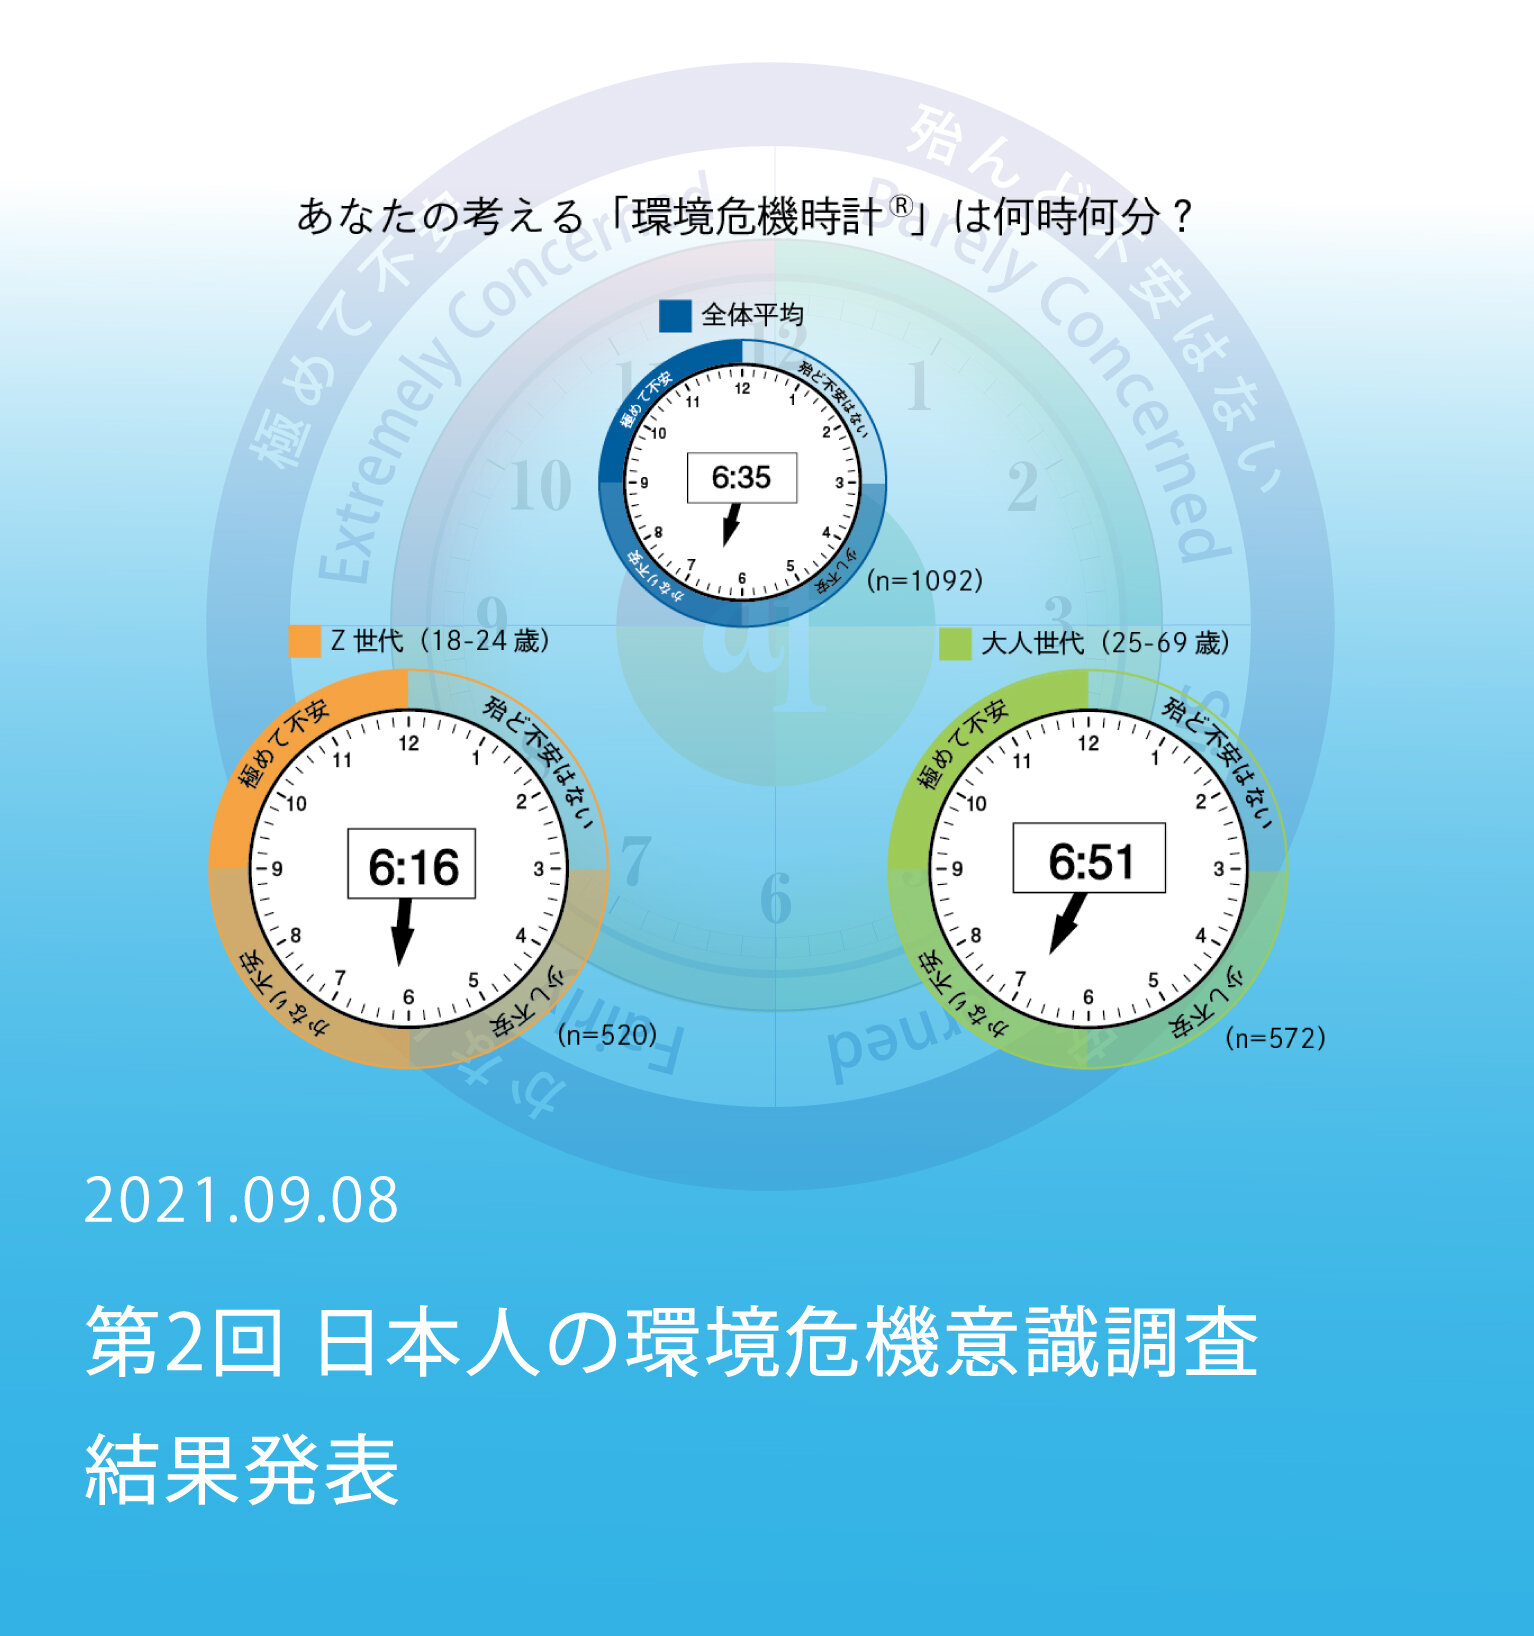 第2回「日本人の環境危機意識調査」結果発表